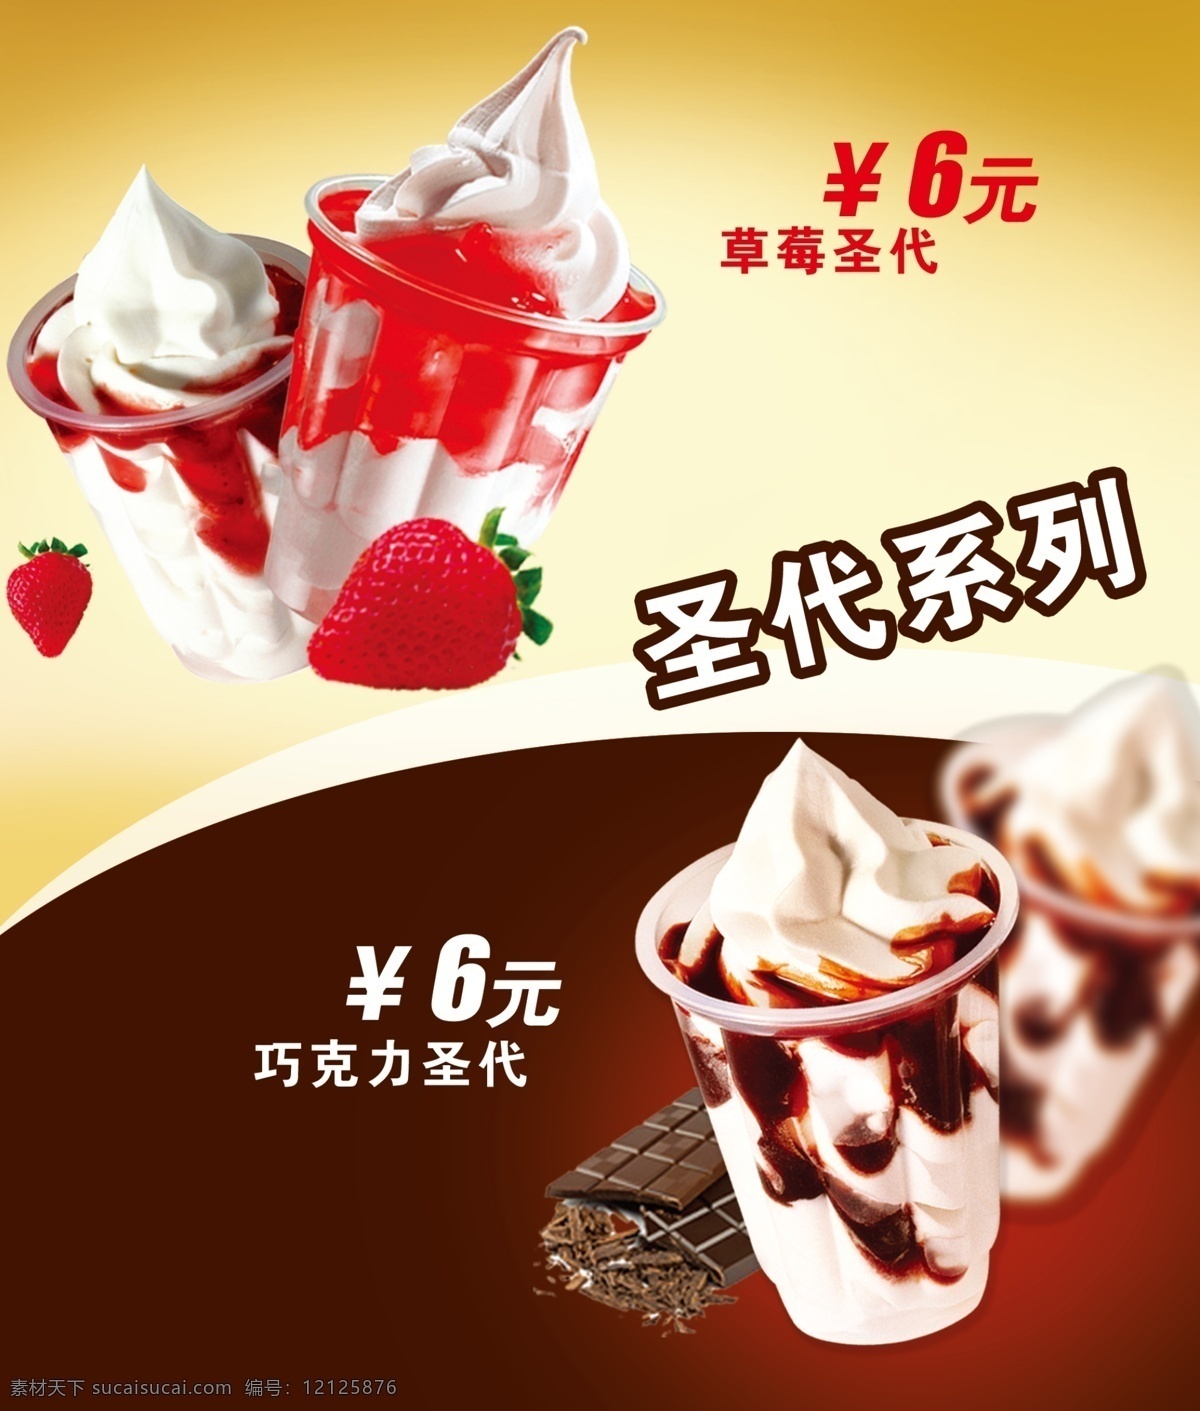 圣代系列 夏天冰品 圣代 巧克力圣代 草莓圣代 巧克力 草莓 广告设计模板 源文件